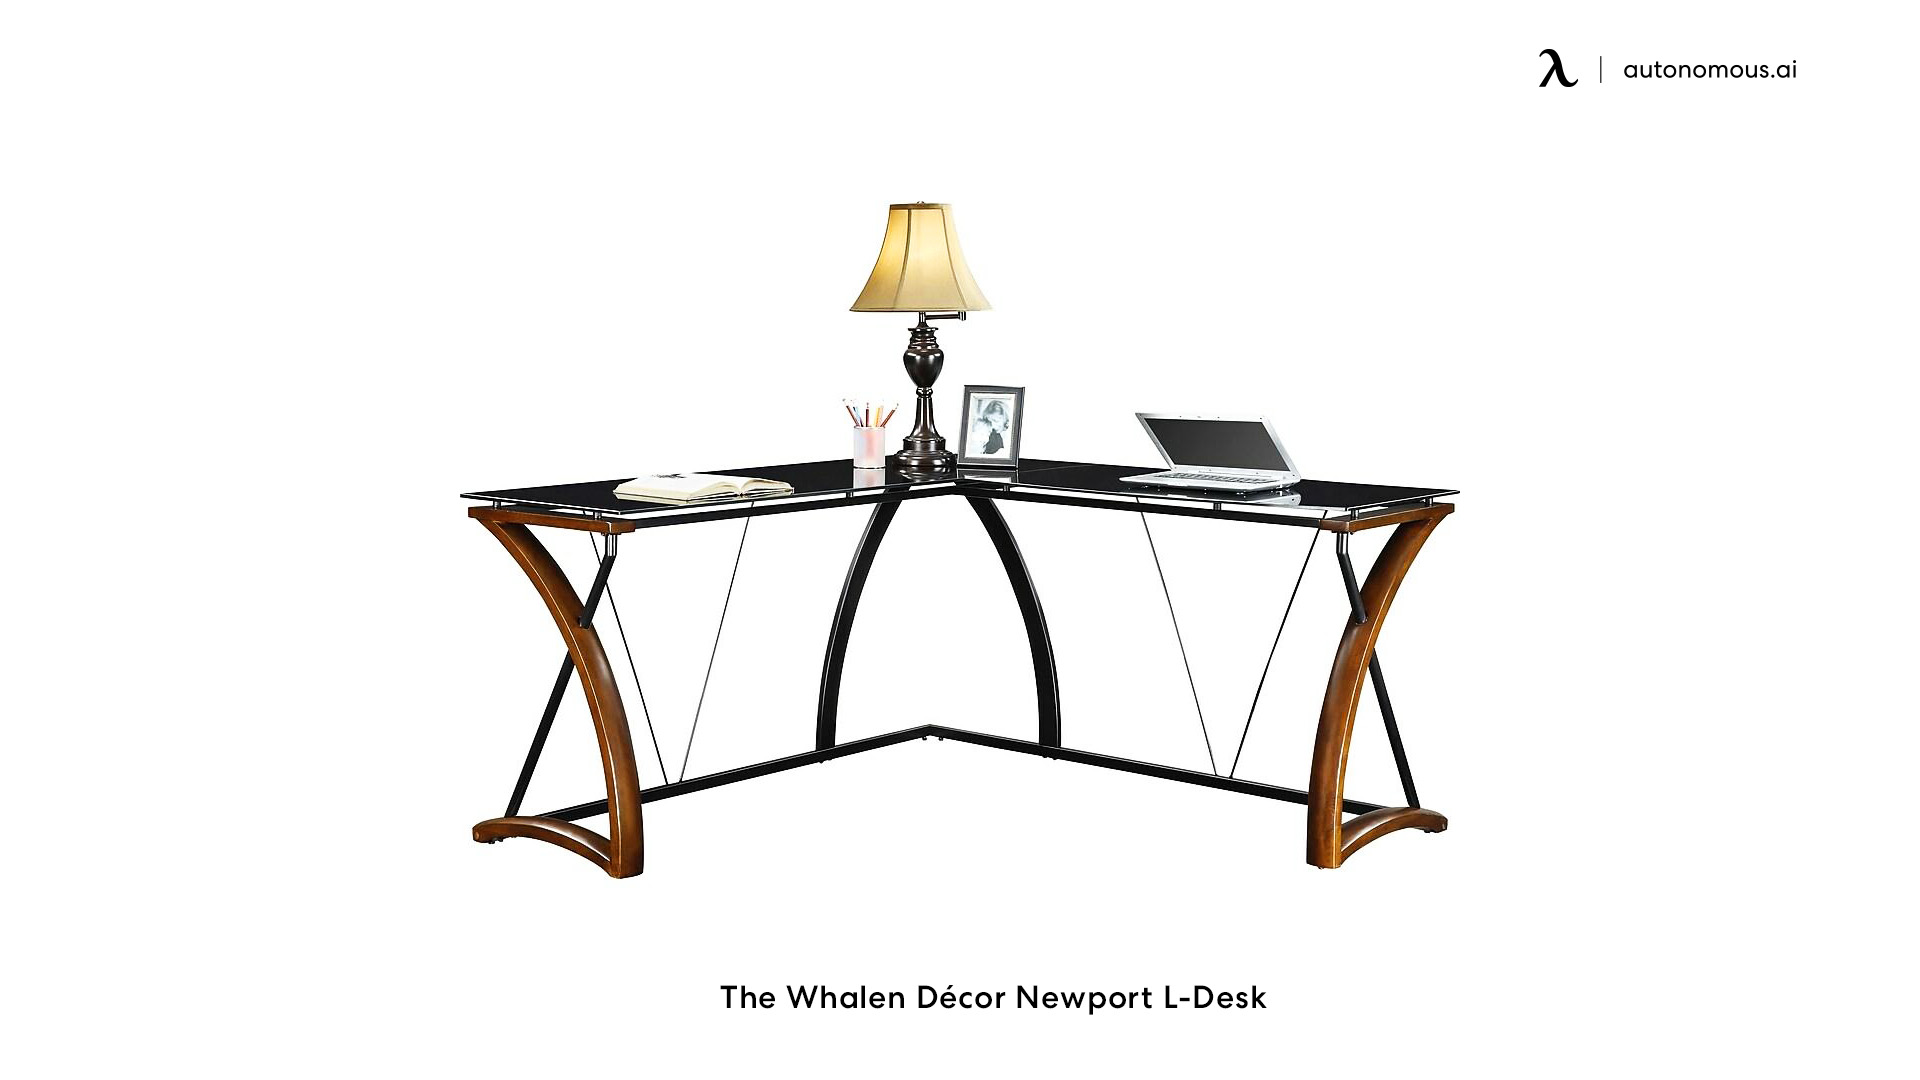 The Whalen Décor Newport L-Desk